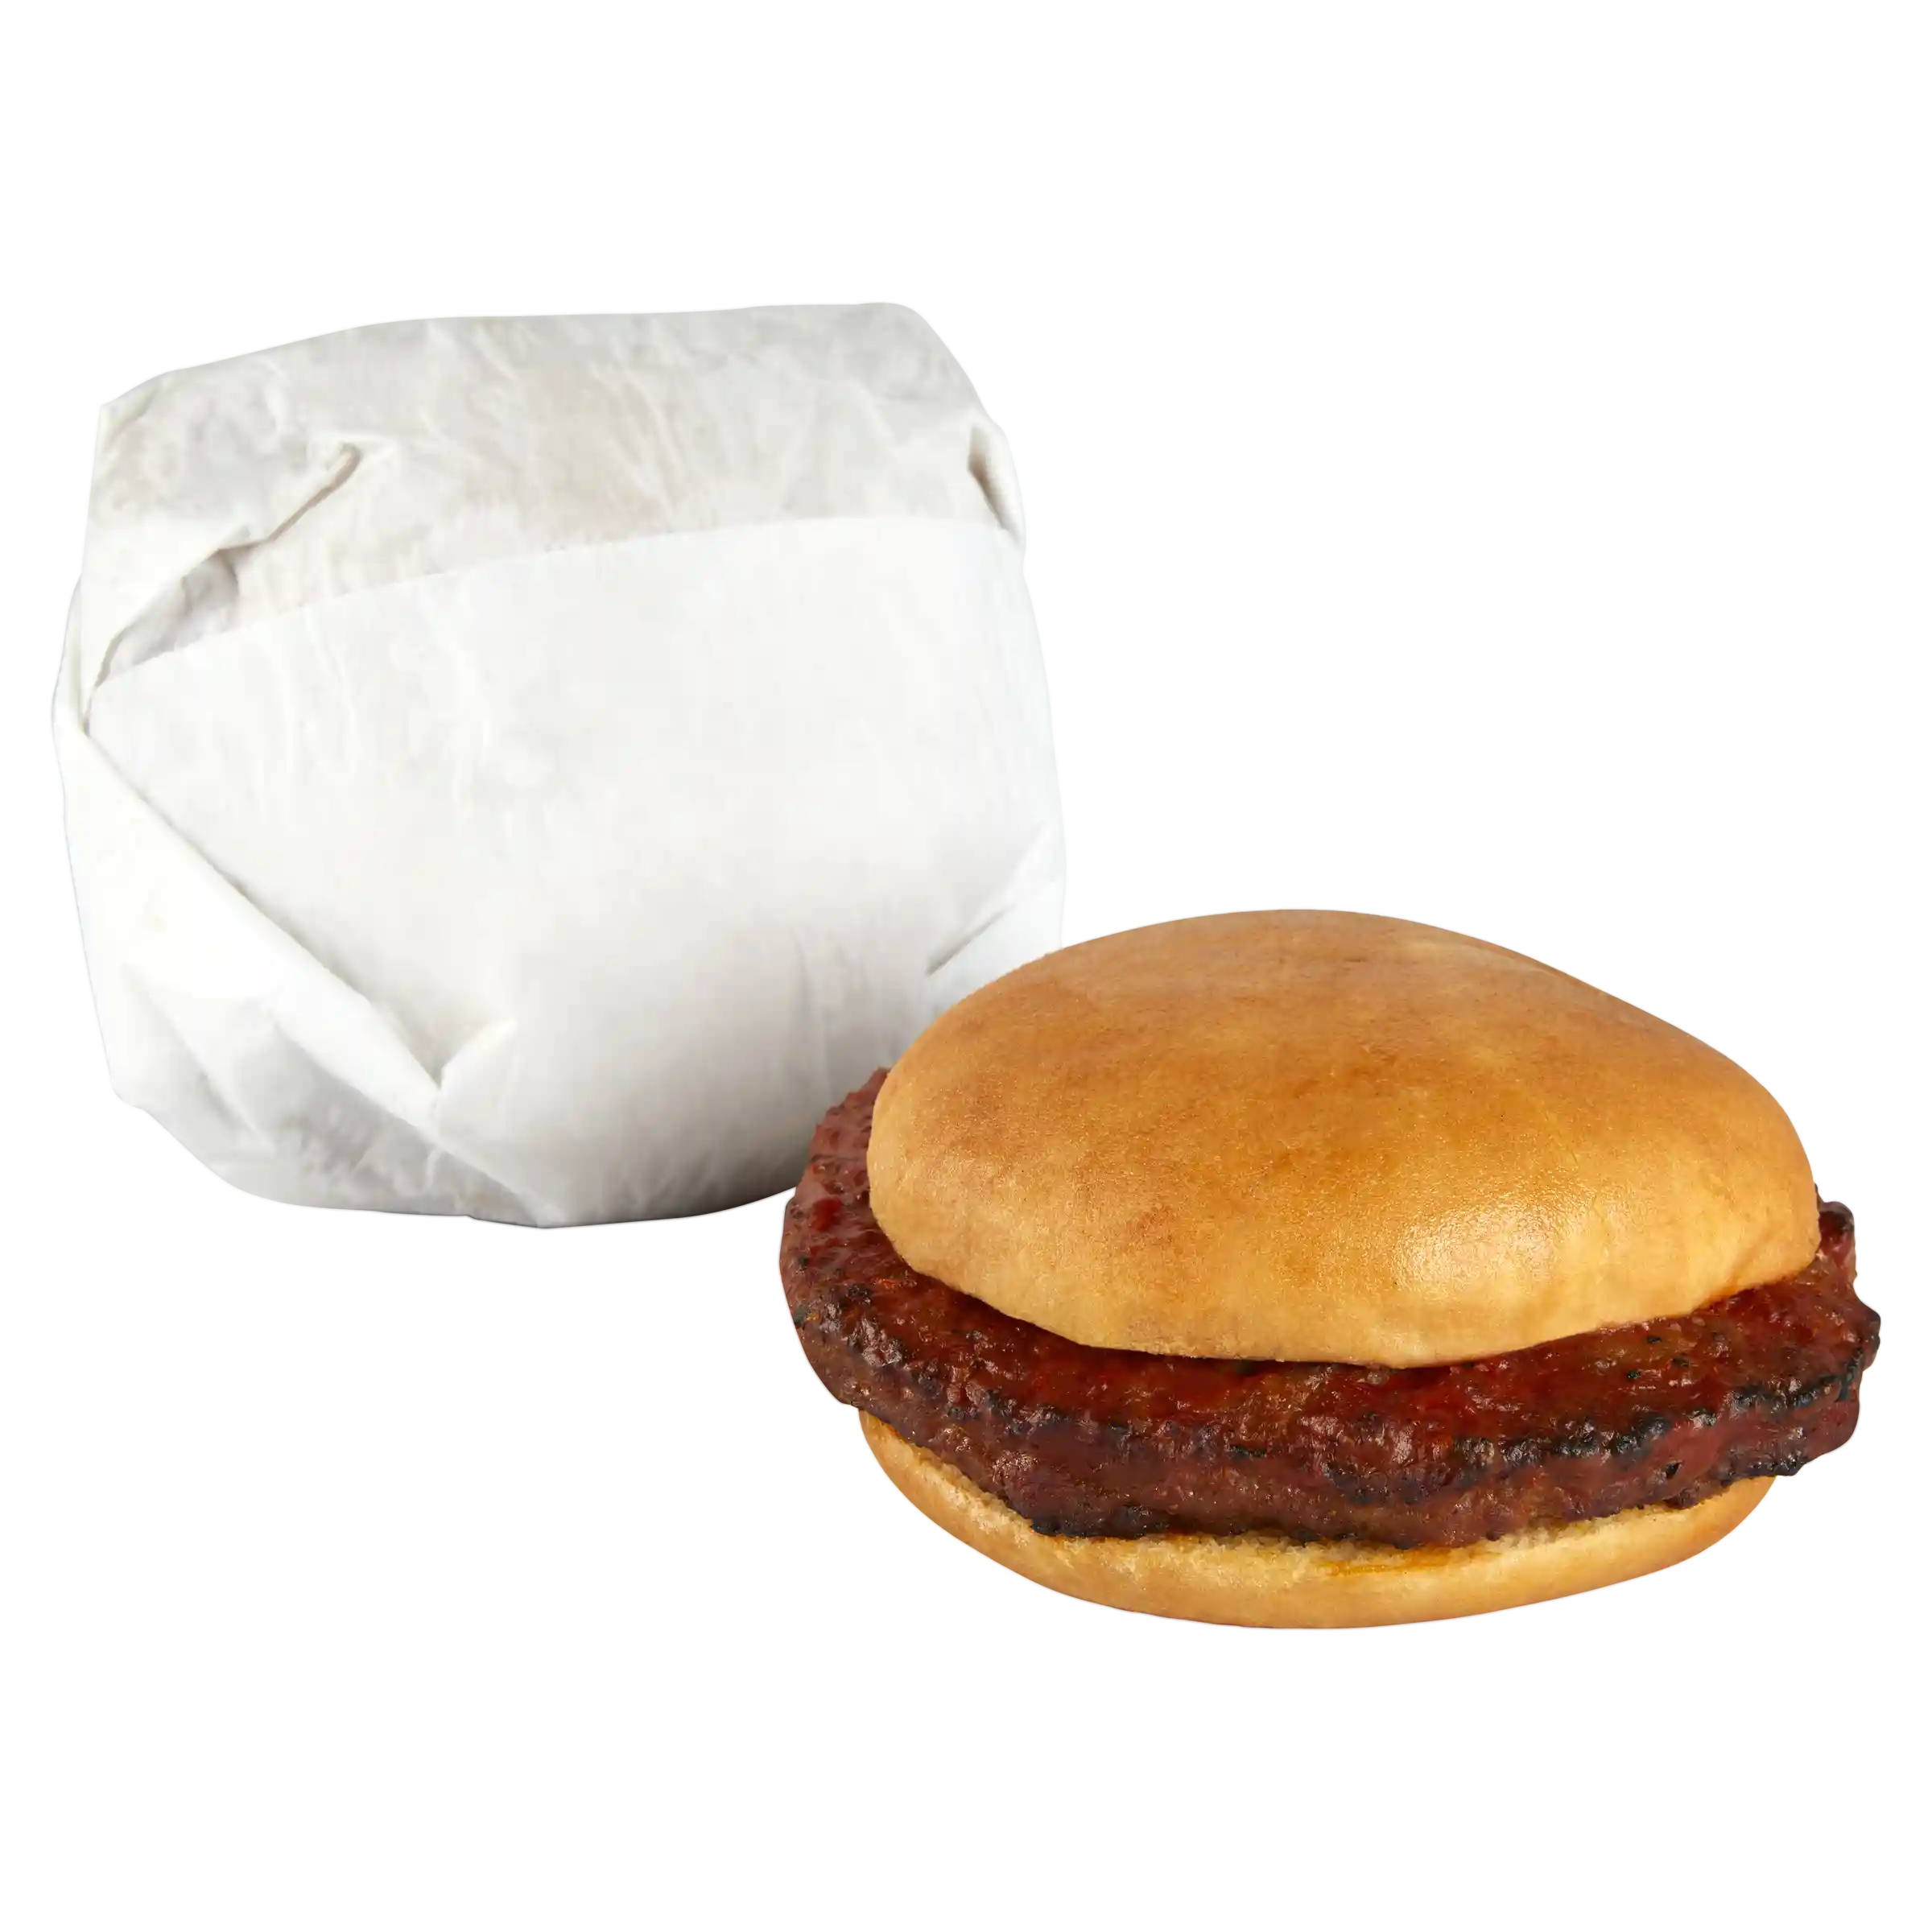 Pierre Unlabeled™ Meatloaf Sandwich with Ketchuphttps://images.salsify.com/image/upload/s--4lmwCLKK--/q_25/fiqkmbsplvskotenbndl.webp